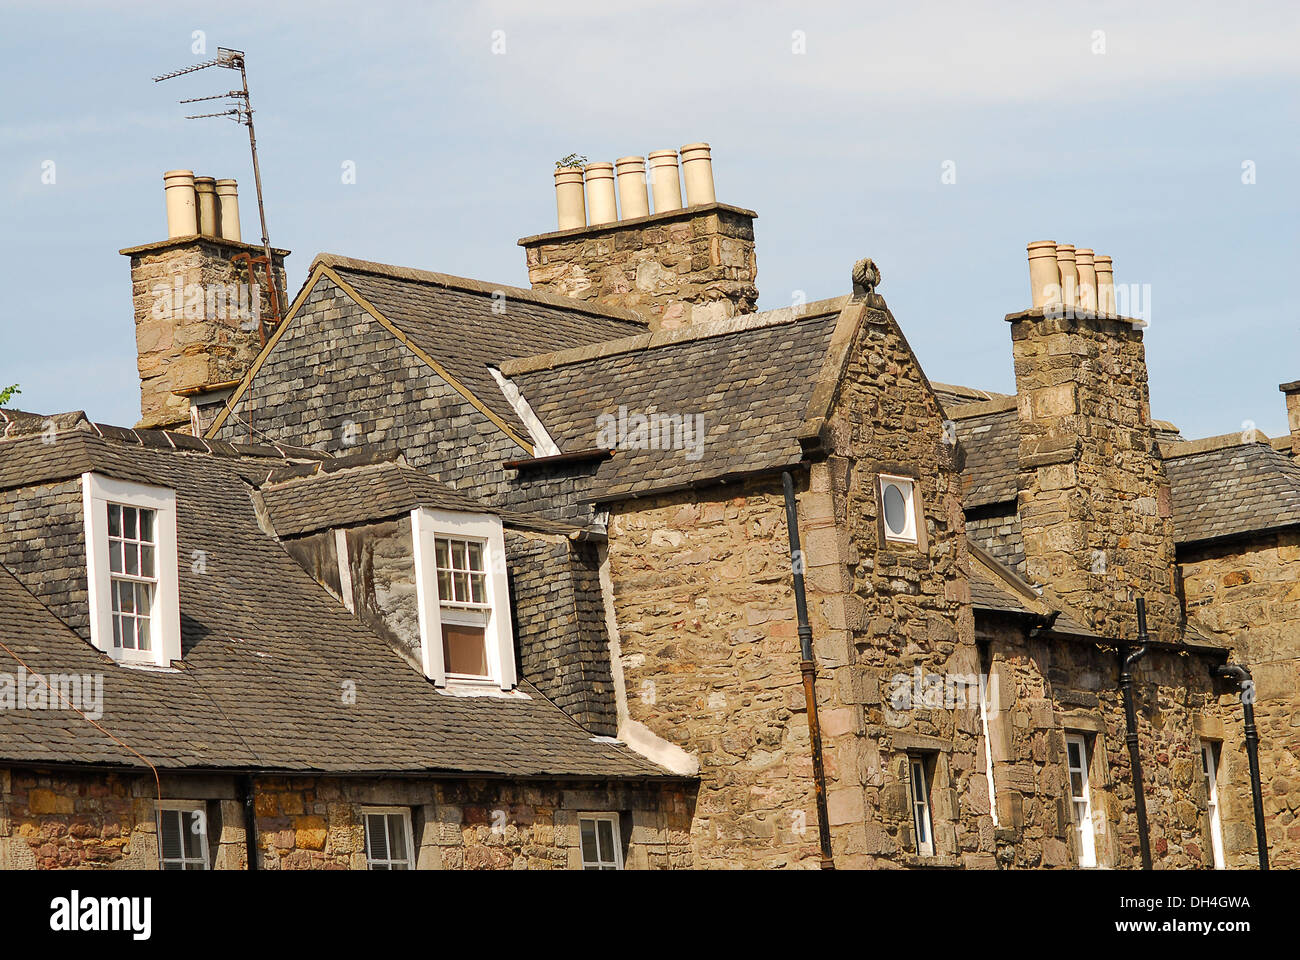 Tejados de casa en Reino Unido, tejados en Edimburgo, Escocia, travel Stock Photo